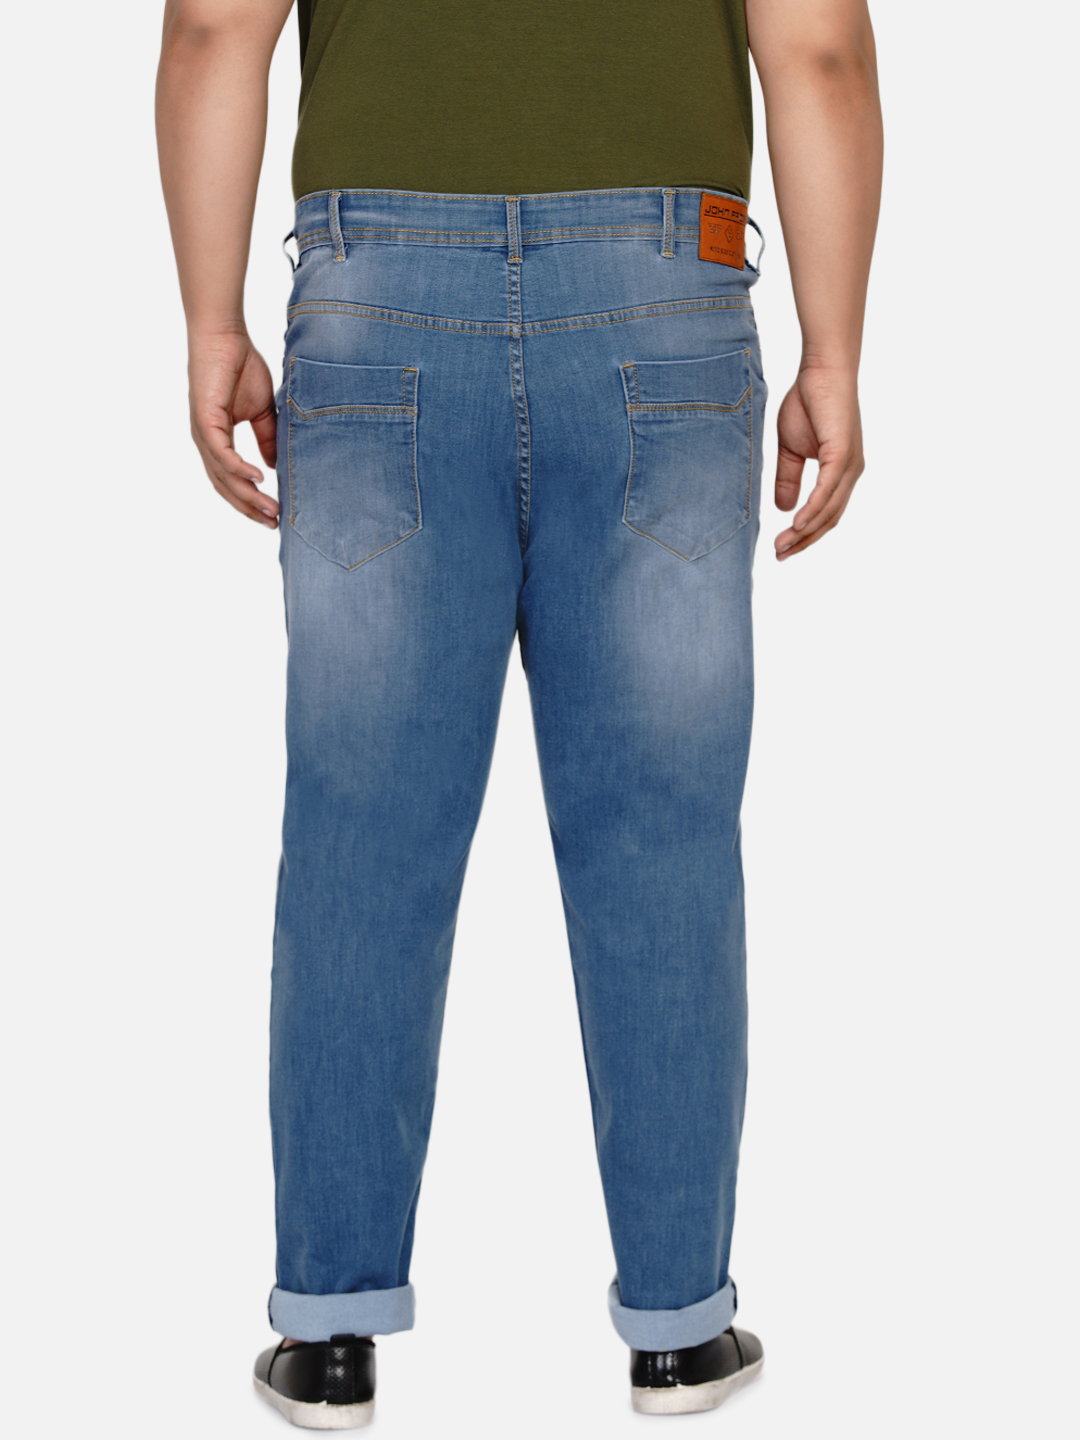 affordables/jeans/EJPJ2021/ejpj2021-6.jpg